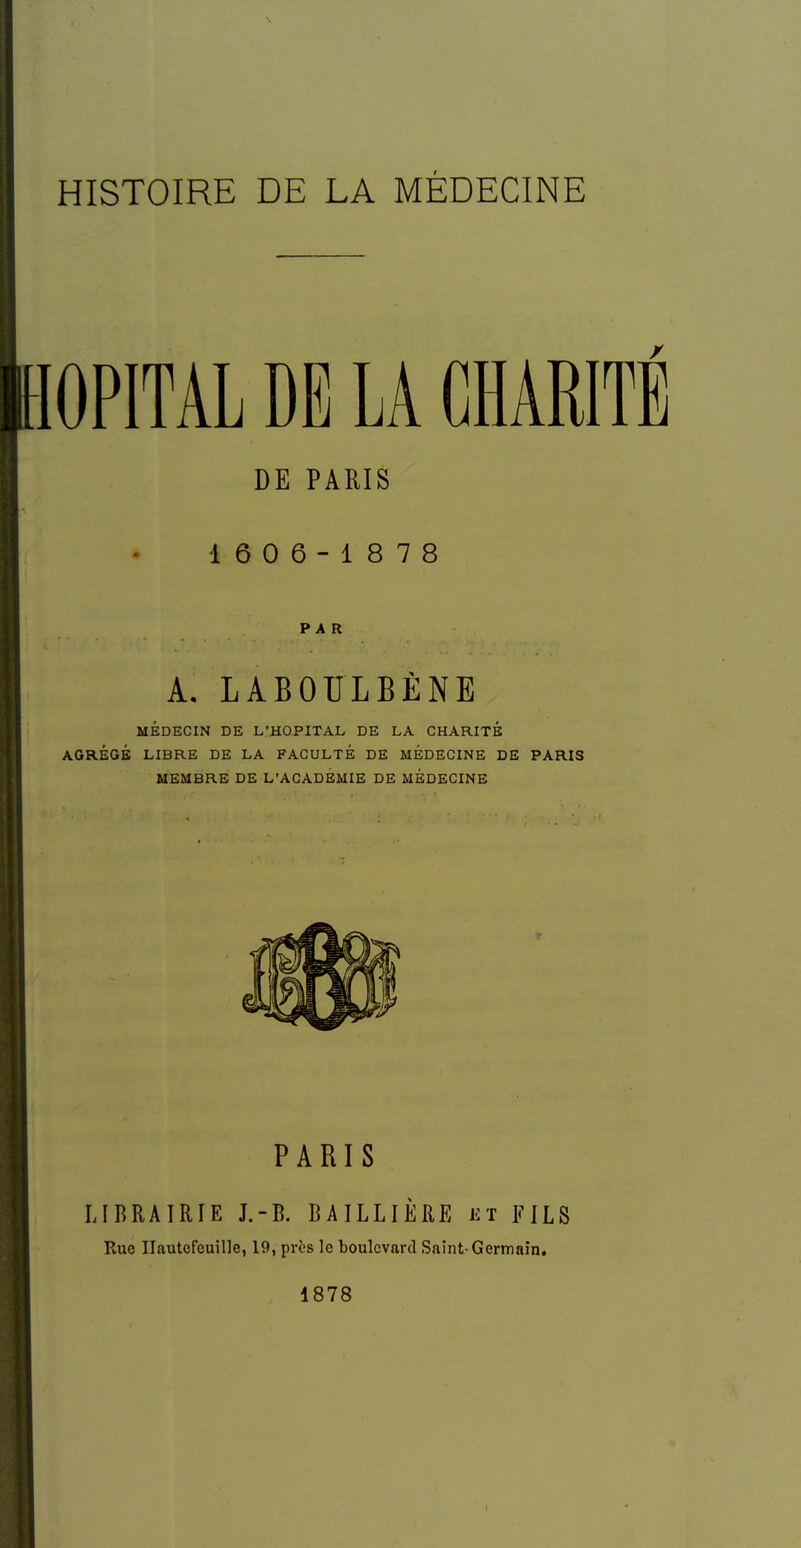 HISTOIRE DE LA MÉDECINE lOPITAL DE LA CHARITE DE PARIS 16 0 6-1878 PAR A. LABOULBÈNE MÉDECIN DE L'HOPITAL DE LA CHARITÉ AGRÉGÉ LIBRE DE LA FACULTÉ DE MEDECINE DE PARIS MEMBRE DE L'ACADÉMIE DE MEDECINE PARIS LIBRAIRIE J.-B. BAILLIÈRE et FILS Rue Ilautcfeuille, 19, près le boulevard Saint-Germain, 1878